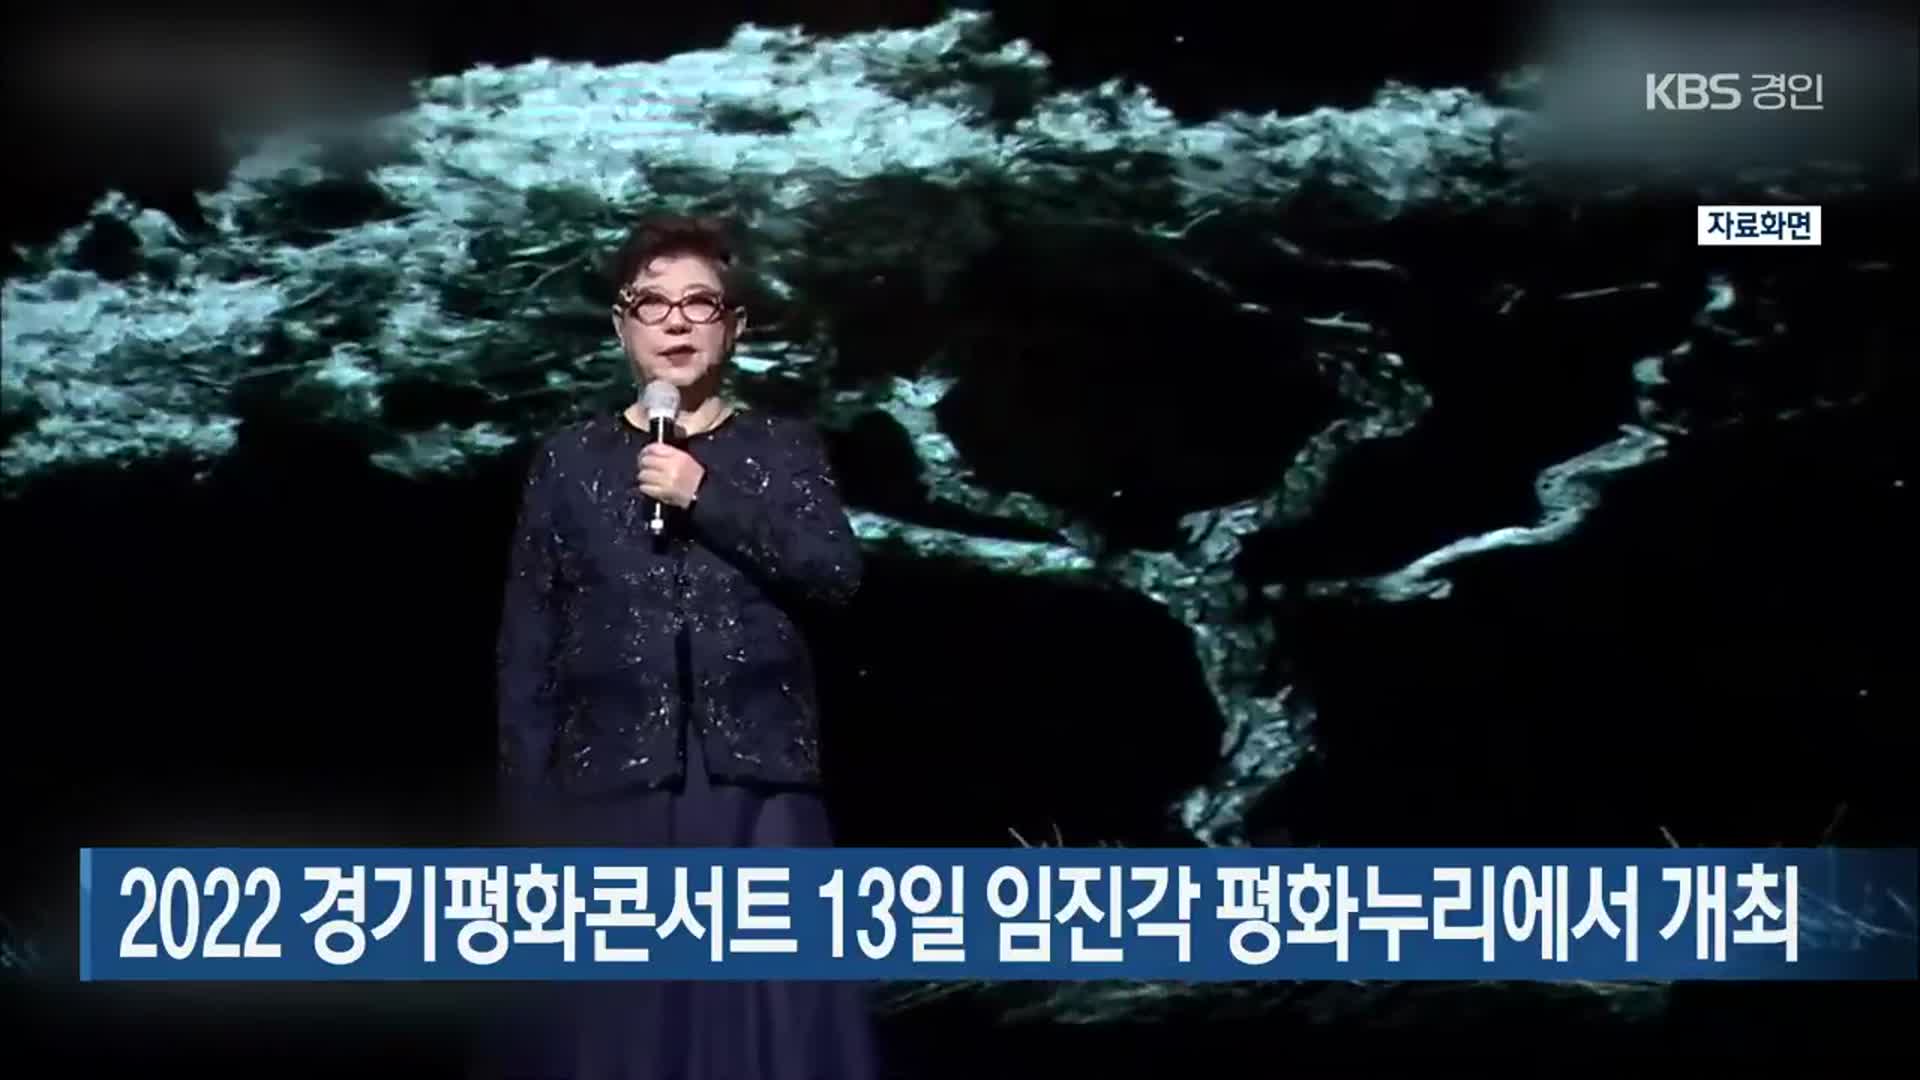 2022 경기평화콘서트 13일 임진각 평화누리에서 개최